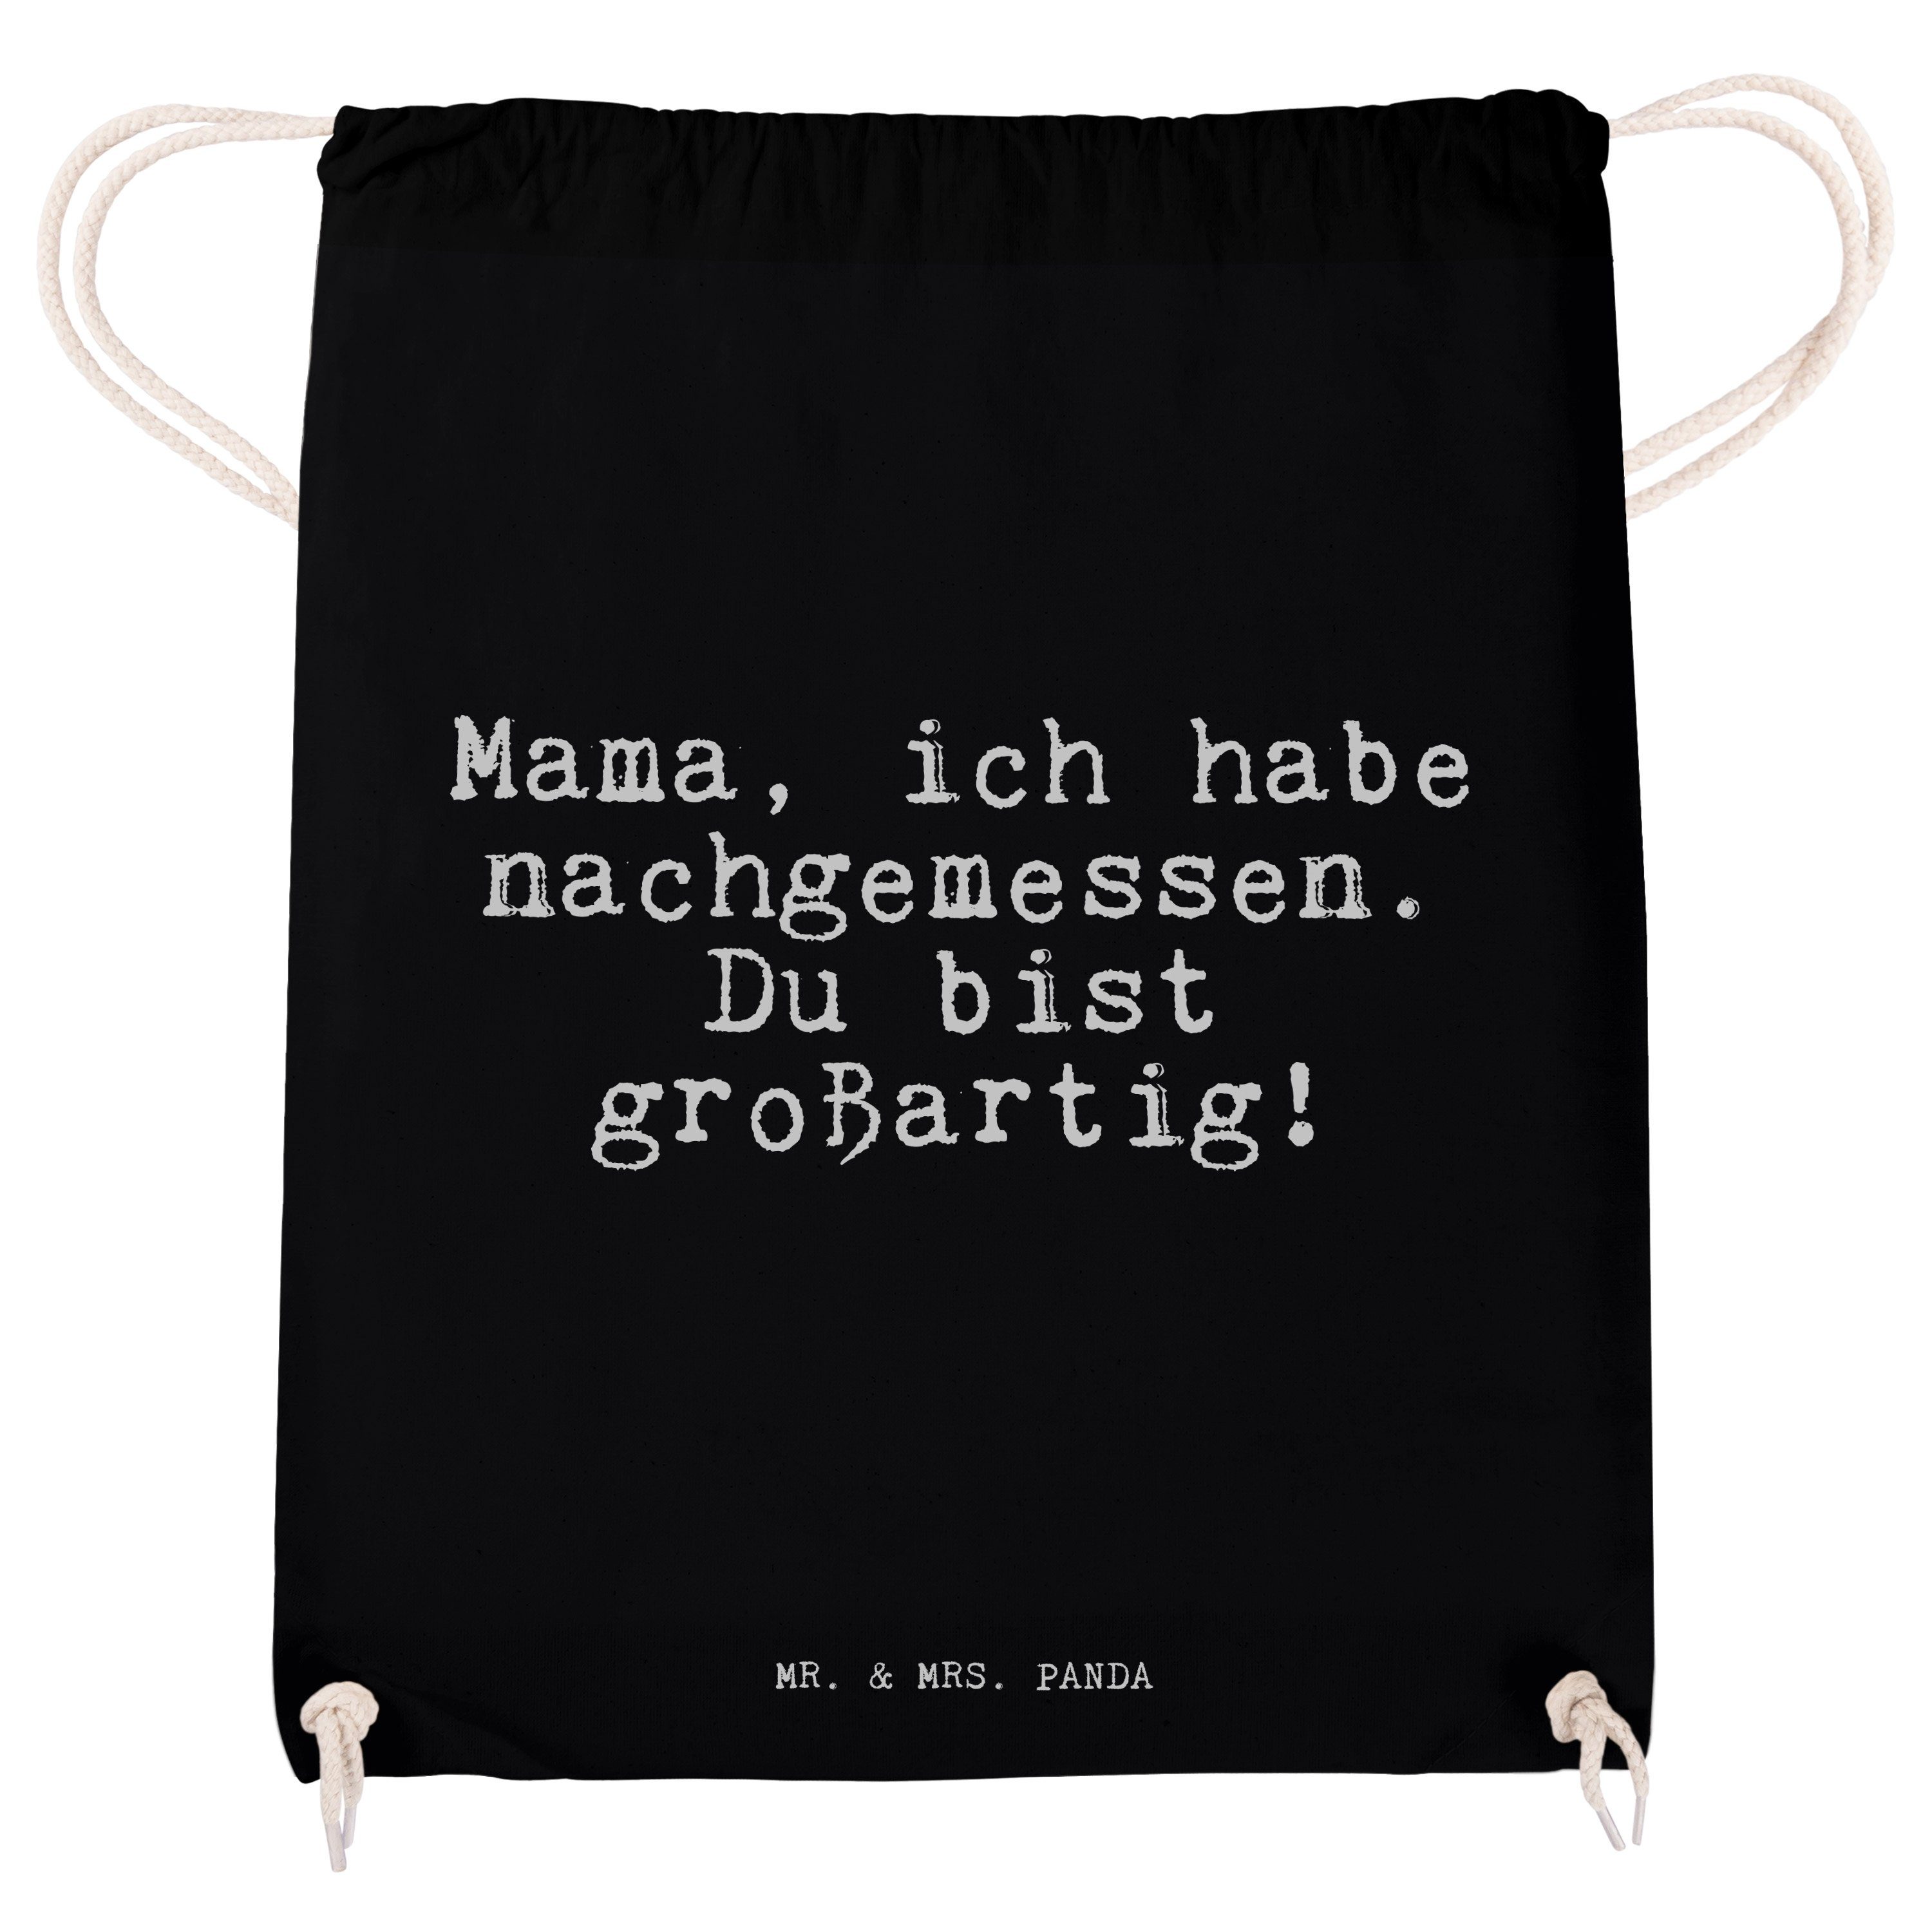 Damen Gepäck|Taschen & Rucksäcke Mr. & Mrs. Panda Sporttasche Mama, ich habe nachgemessen.... - Schwarz - Geburtstag, Tasche, Be